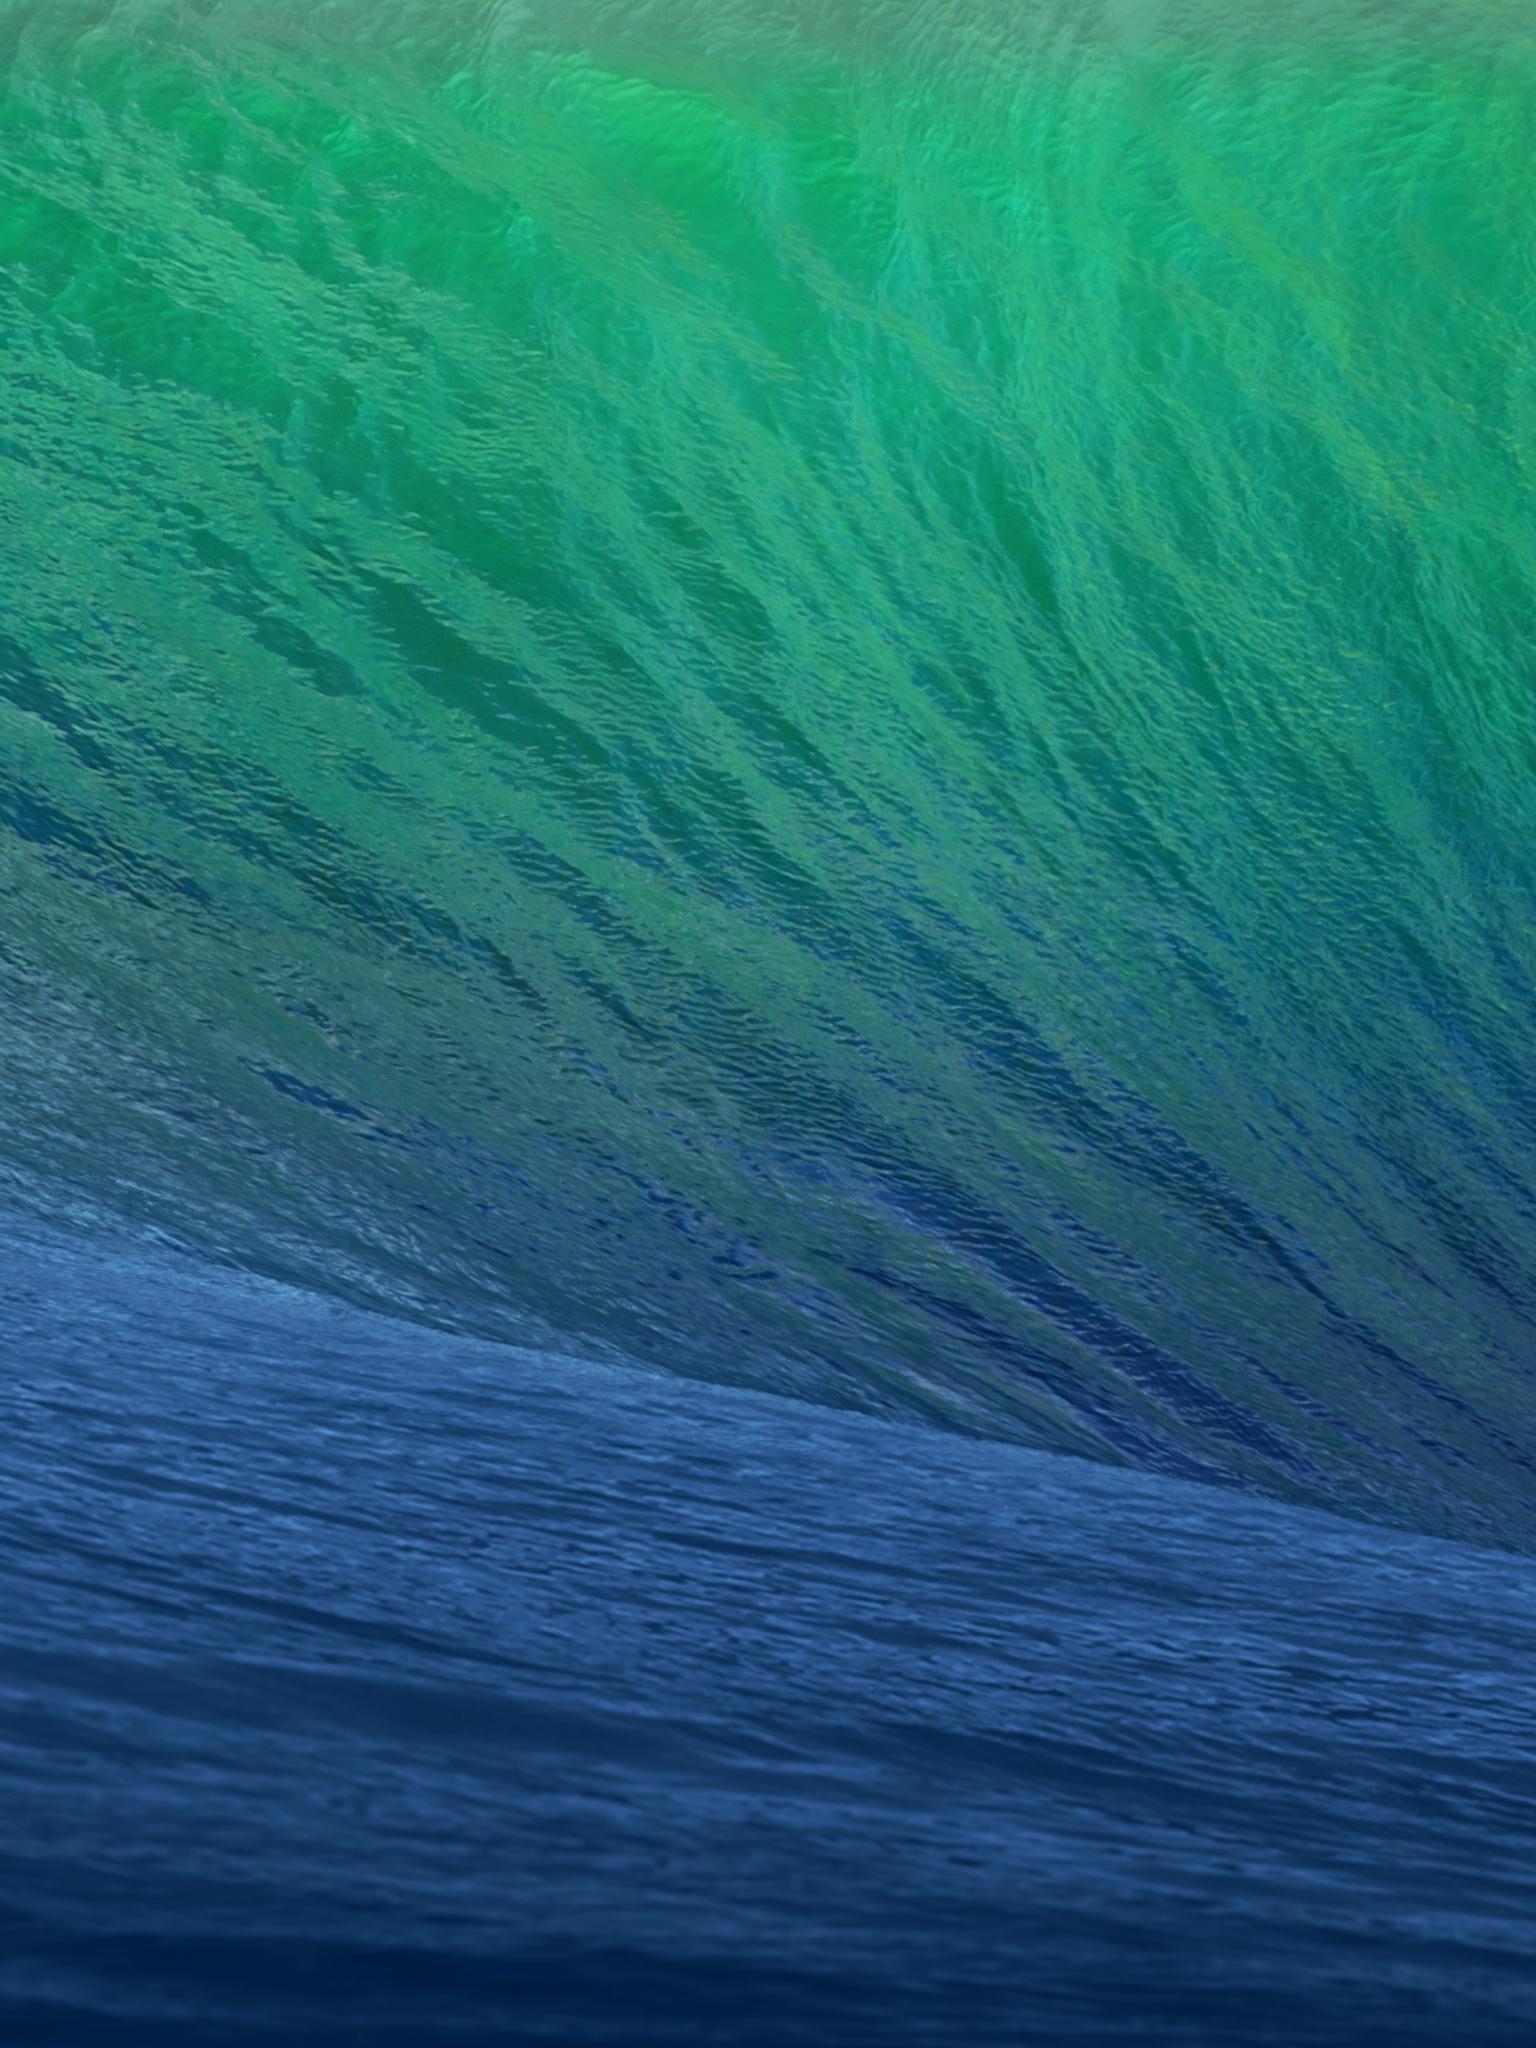 Download 1536x2048 OS X Mavericks Wave Ipad 4 wallpapers [1536x2048